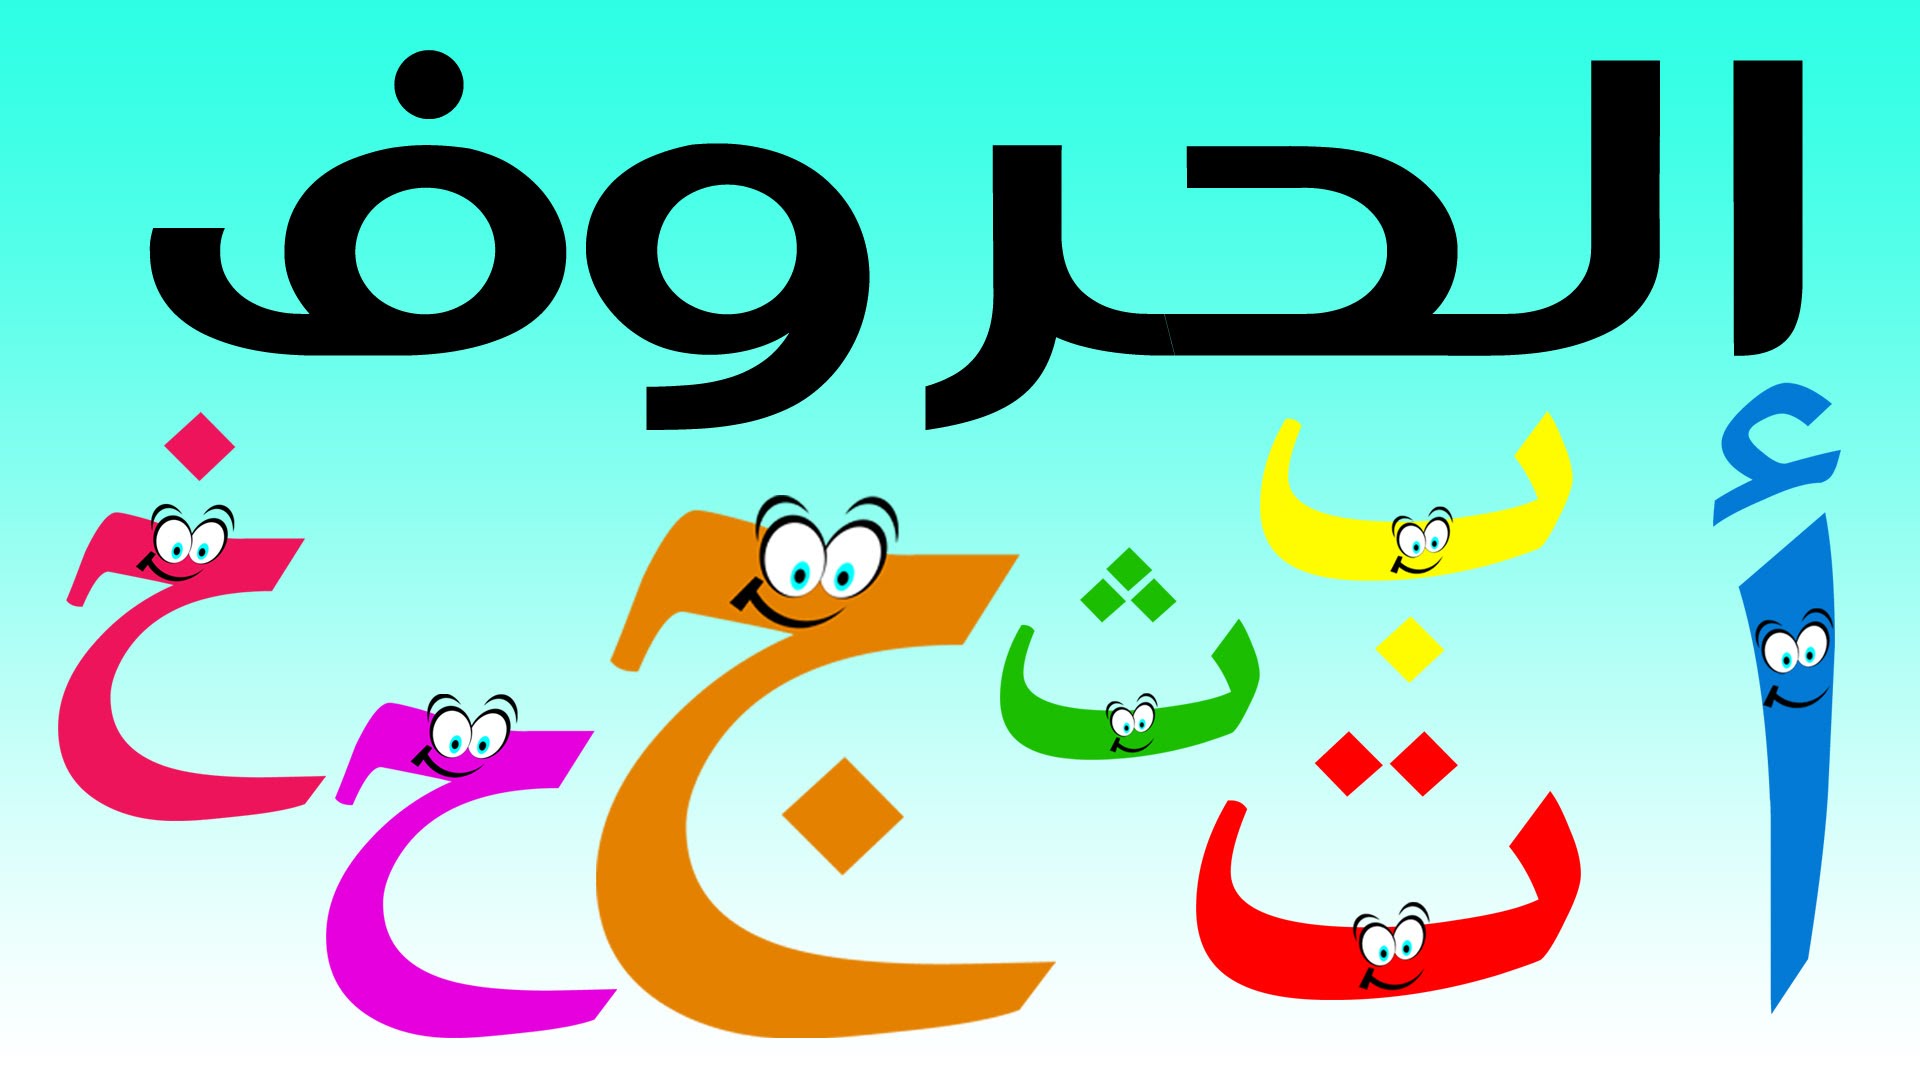 سلسلة حلقات كرتون لتعليم الحروف العربية لاطفال البستان ما قبل المدرسة